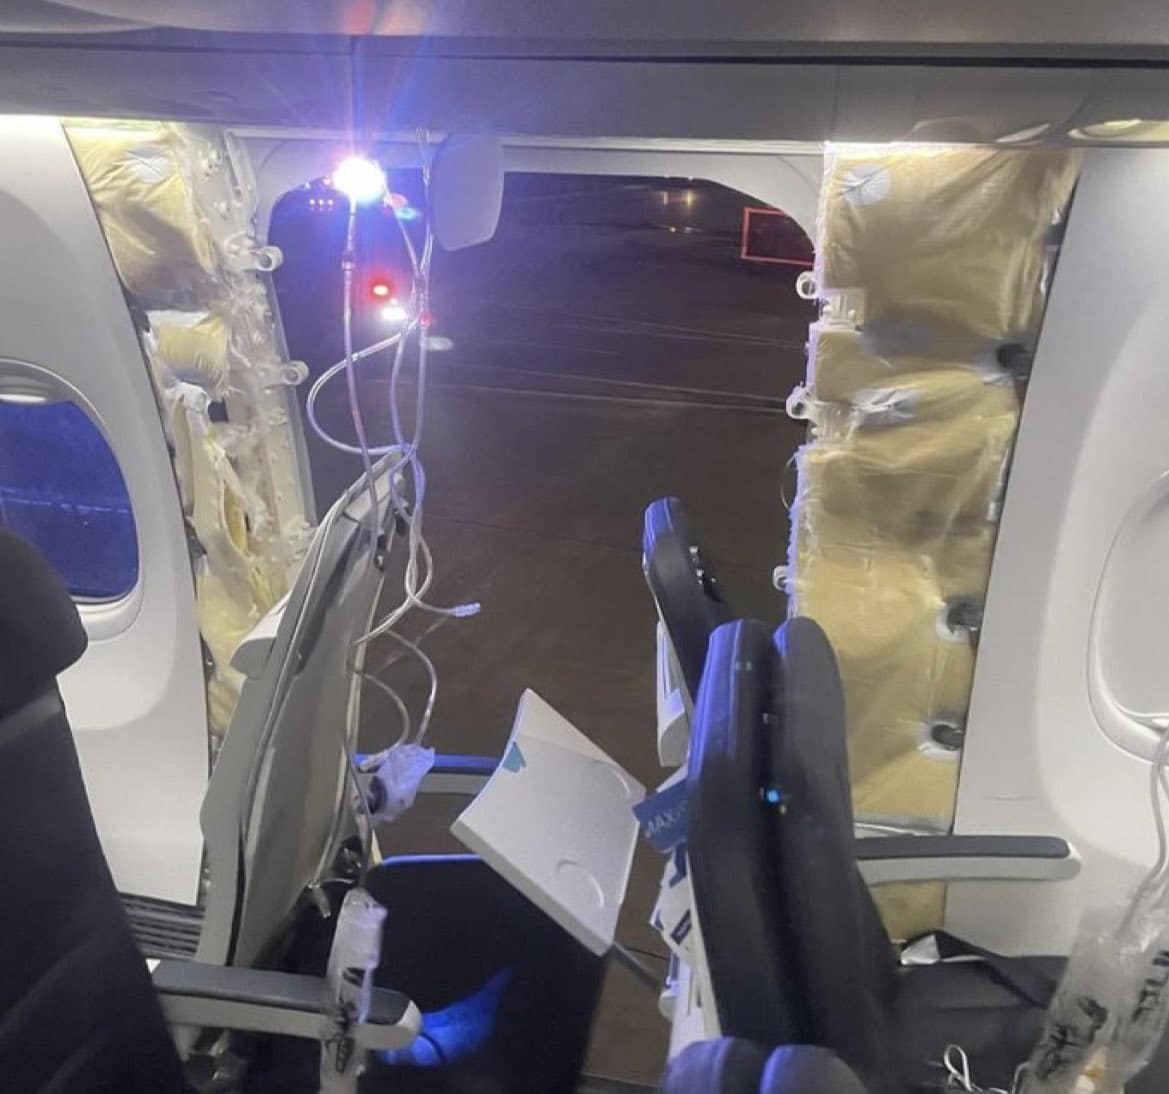 একটি আলাস্কা বোয়িং 737 MAX 9-এ একটি উইন্ডো এবং ফিউজেলেজ প্যানেল হারানোর পরে অনেক প্রতিক্রিয়া: সহযোগিতা করতে বোয়িং, FAA আদেশ দেয় গ্রাউন্ডিং, আইনজীবীদের হস্তক্ষেপ,...